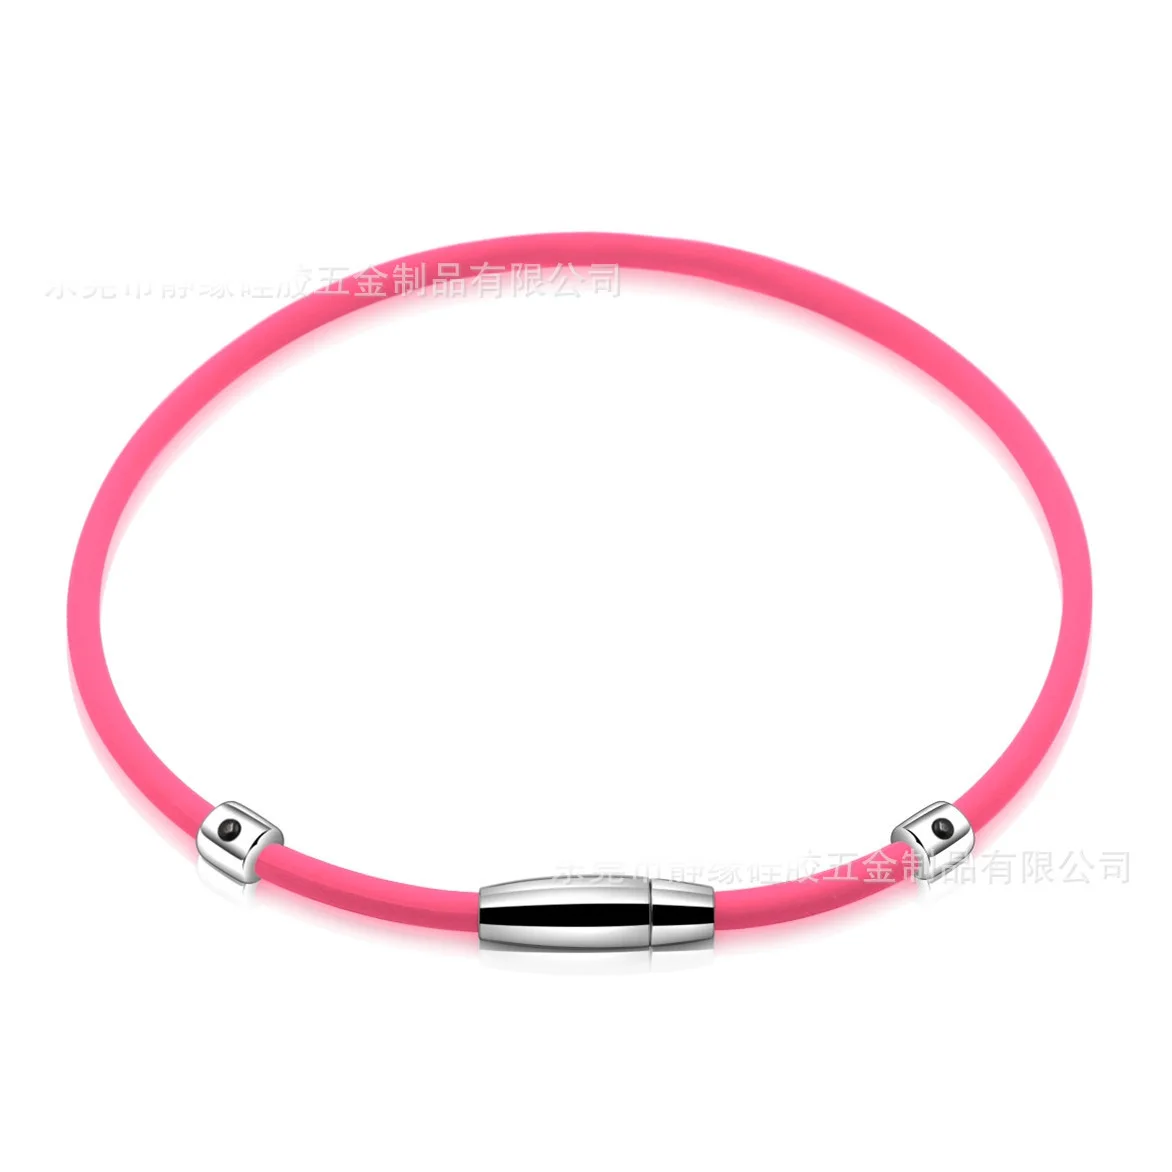 Высокое качество анион силиконовый баланс ожерелье радиационной защиты Магнитная терапия ожерелье с положительной энергетикой - Окраска металла: pink